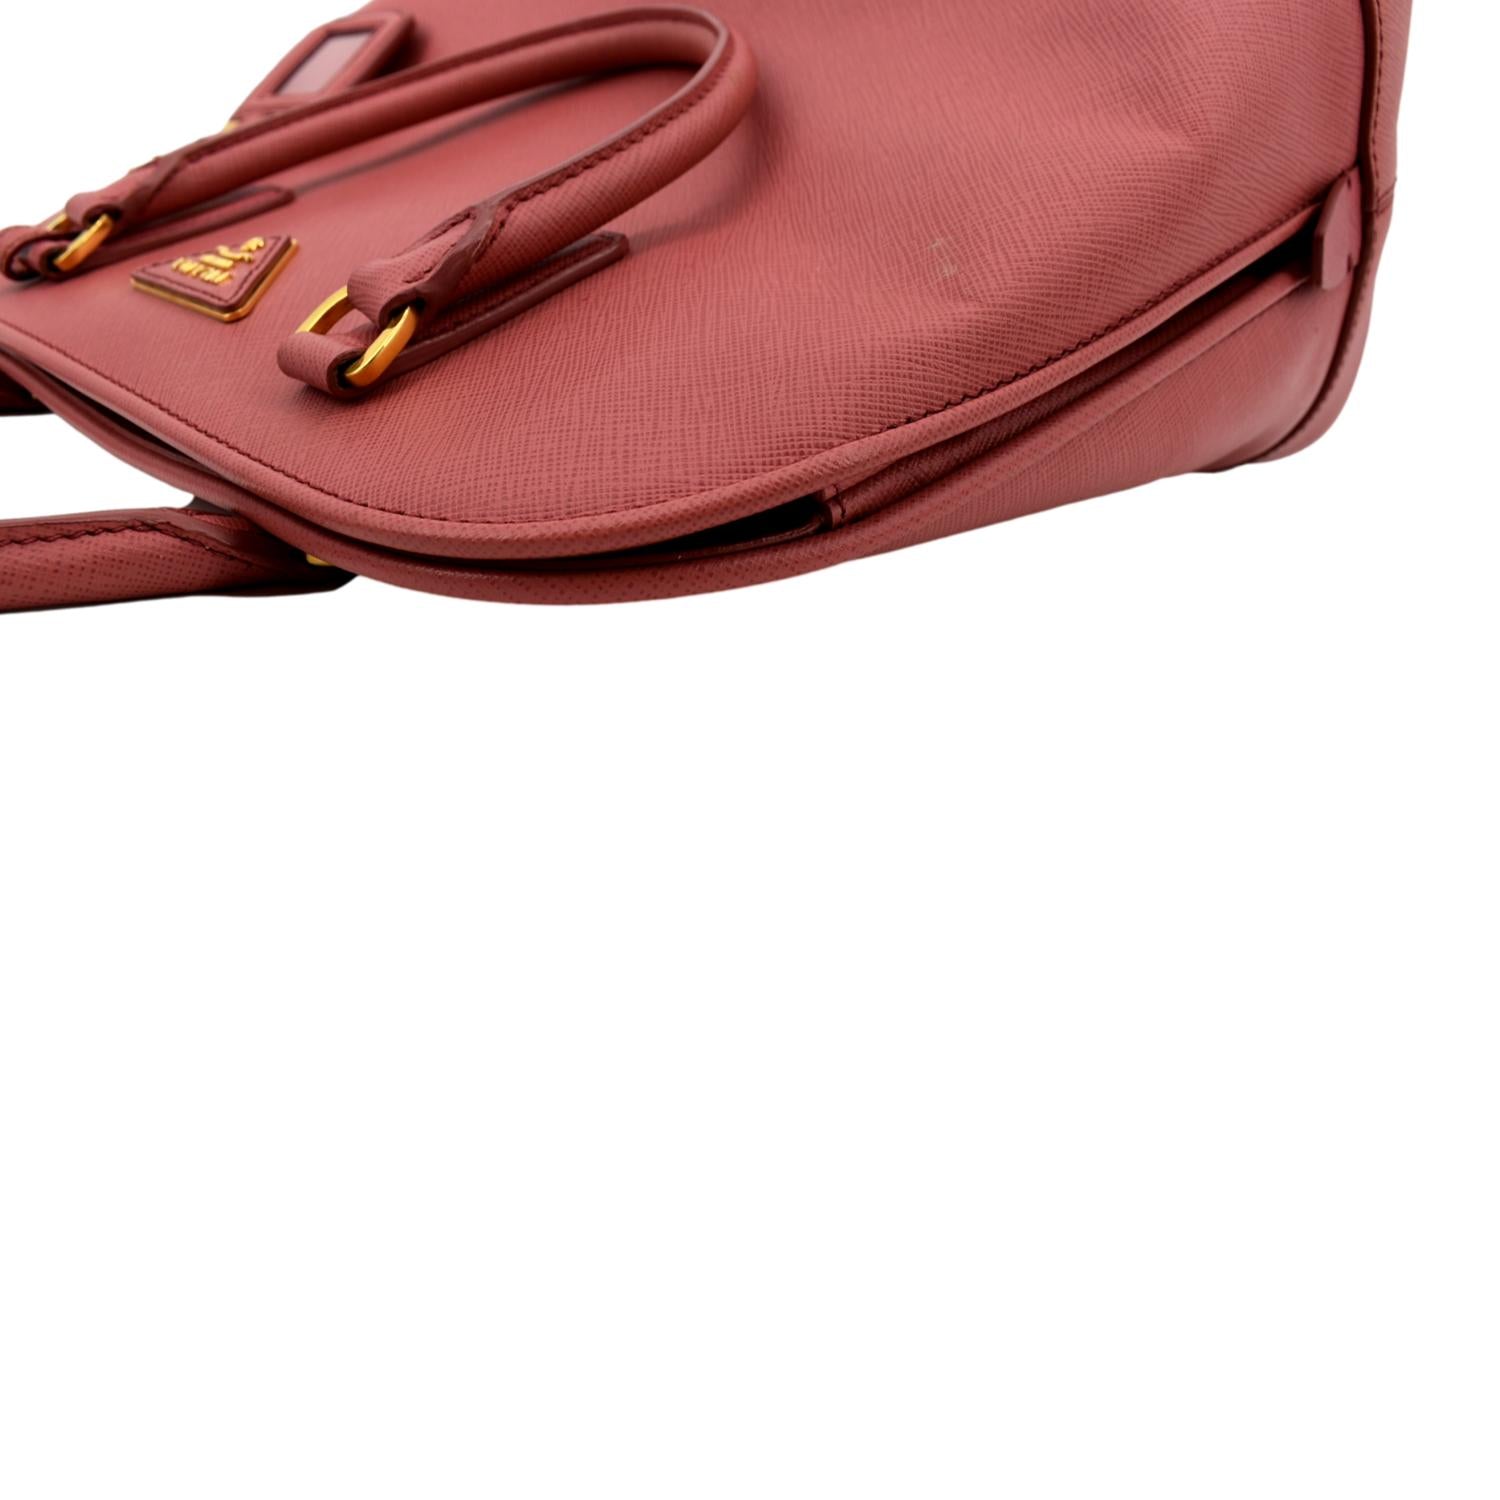 Prada pink saffiano Promenade bag 🌸#pradabags . . Find additional